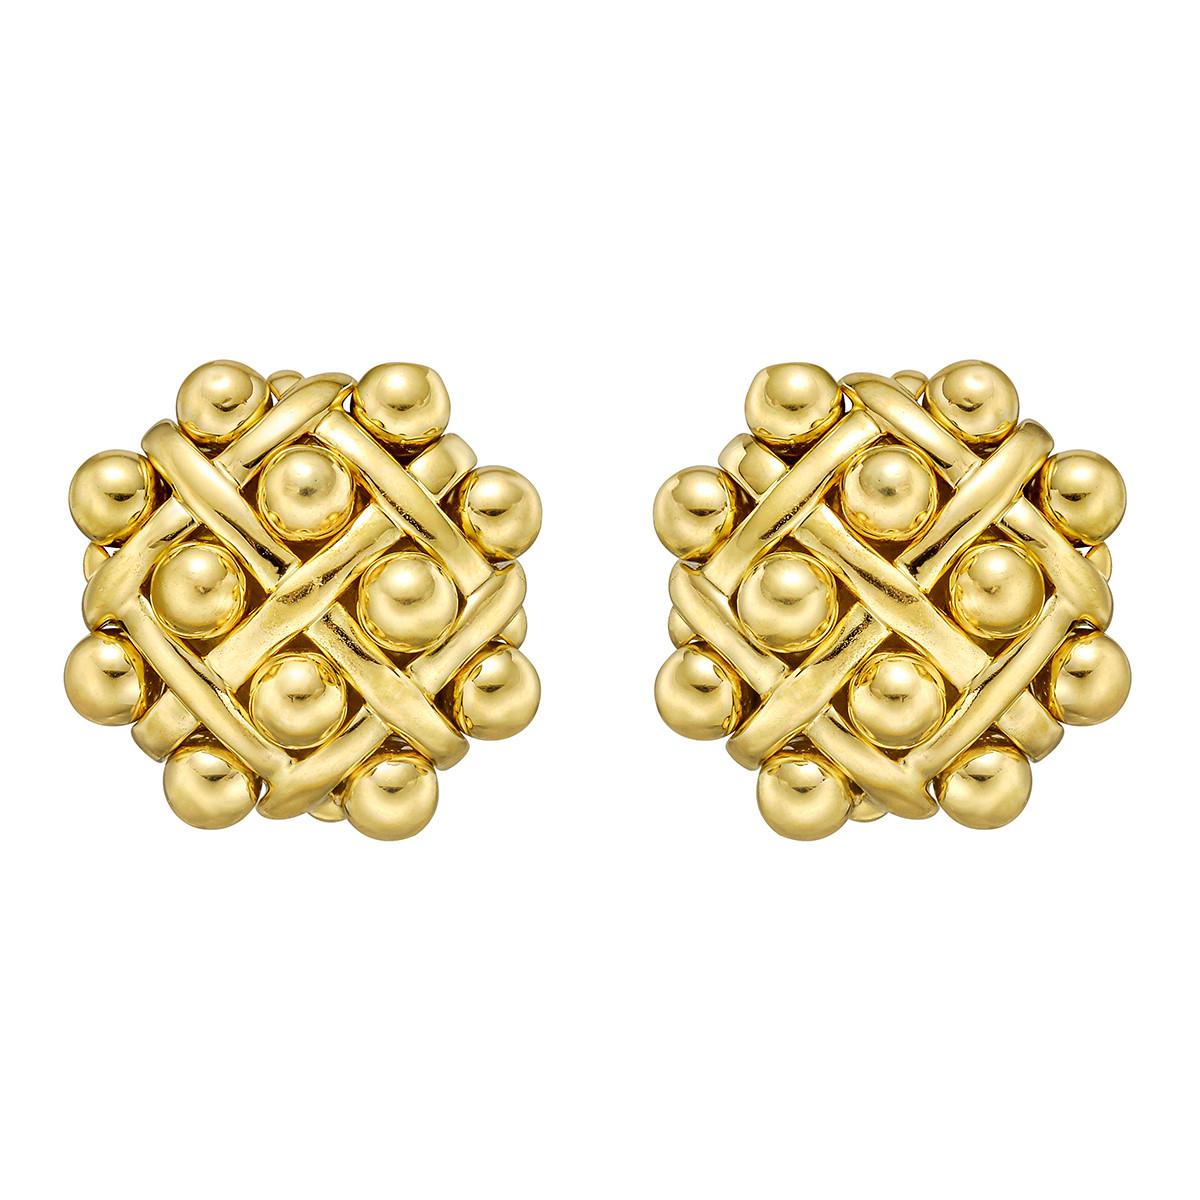 5 Pairs 18K Gold Plated Huggies Earrings Set, Vietnam | Ubuy